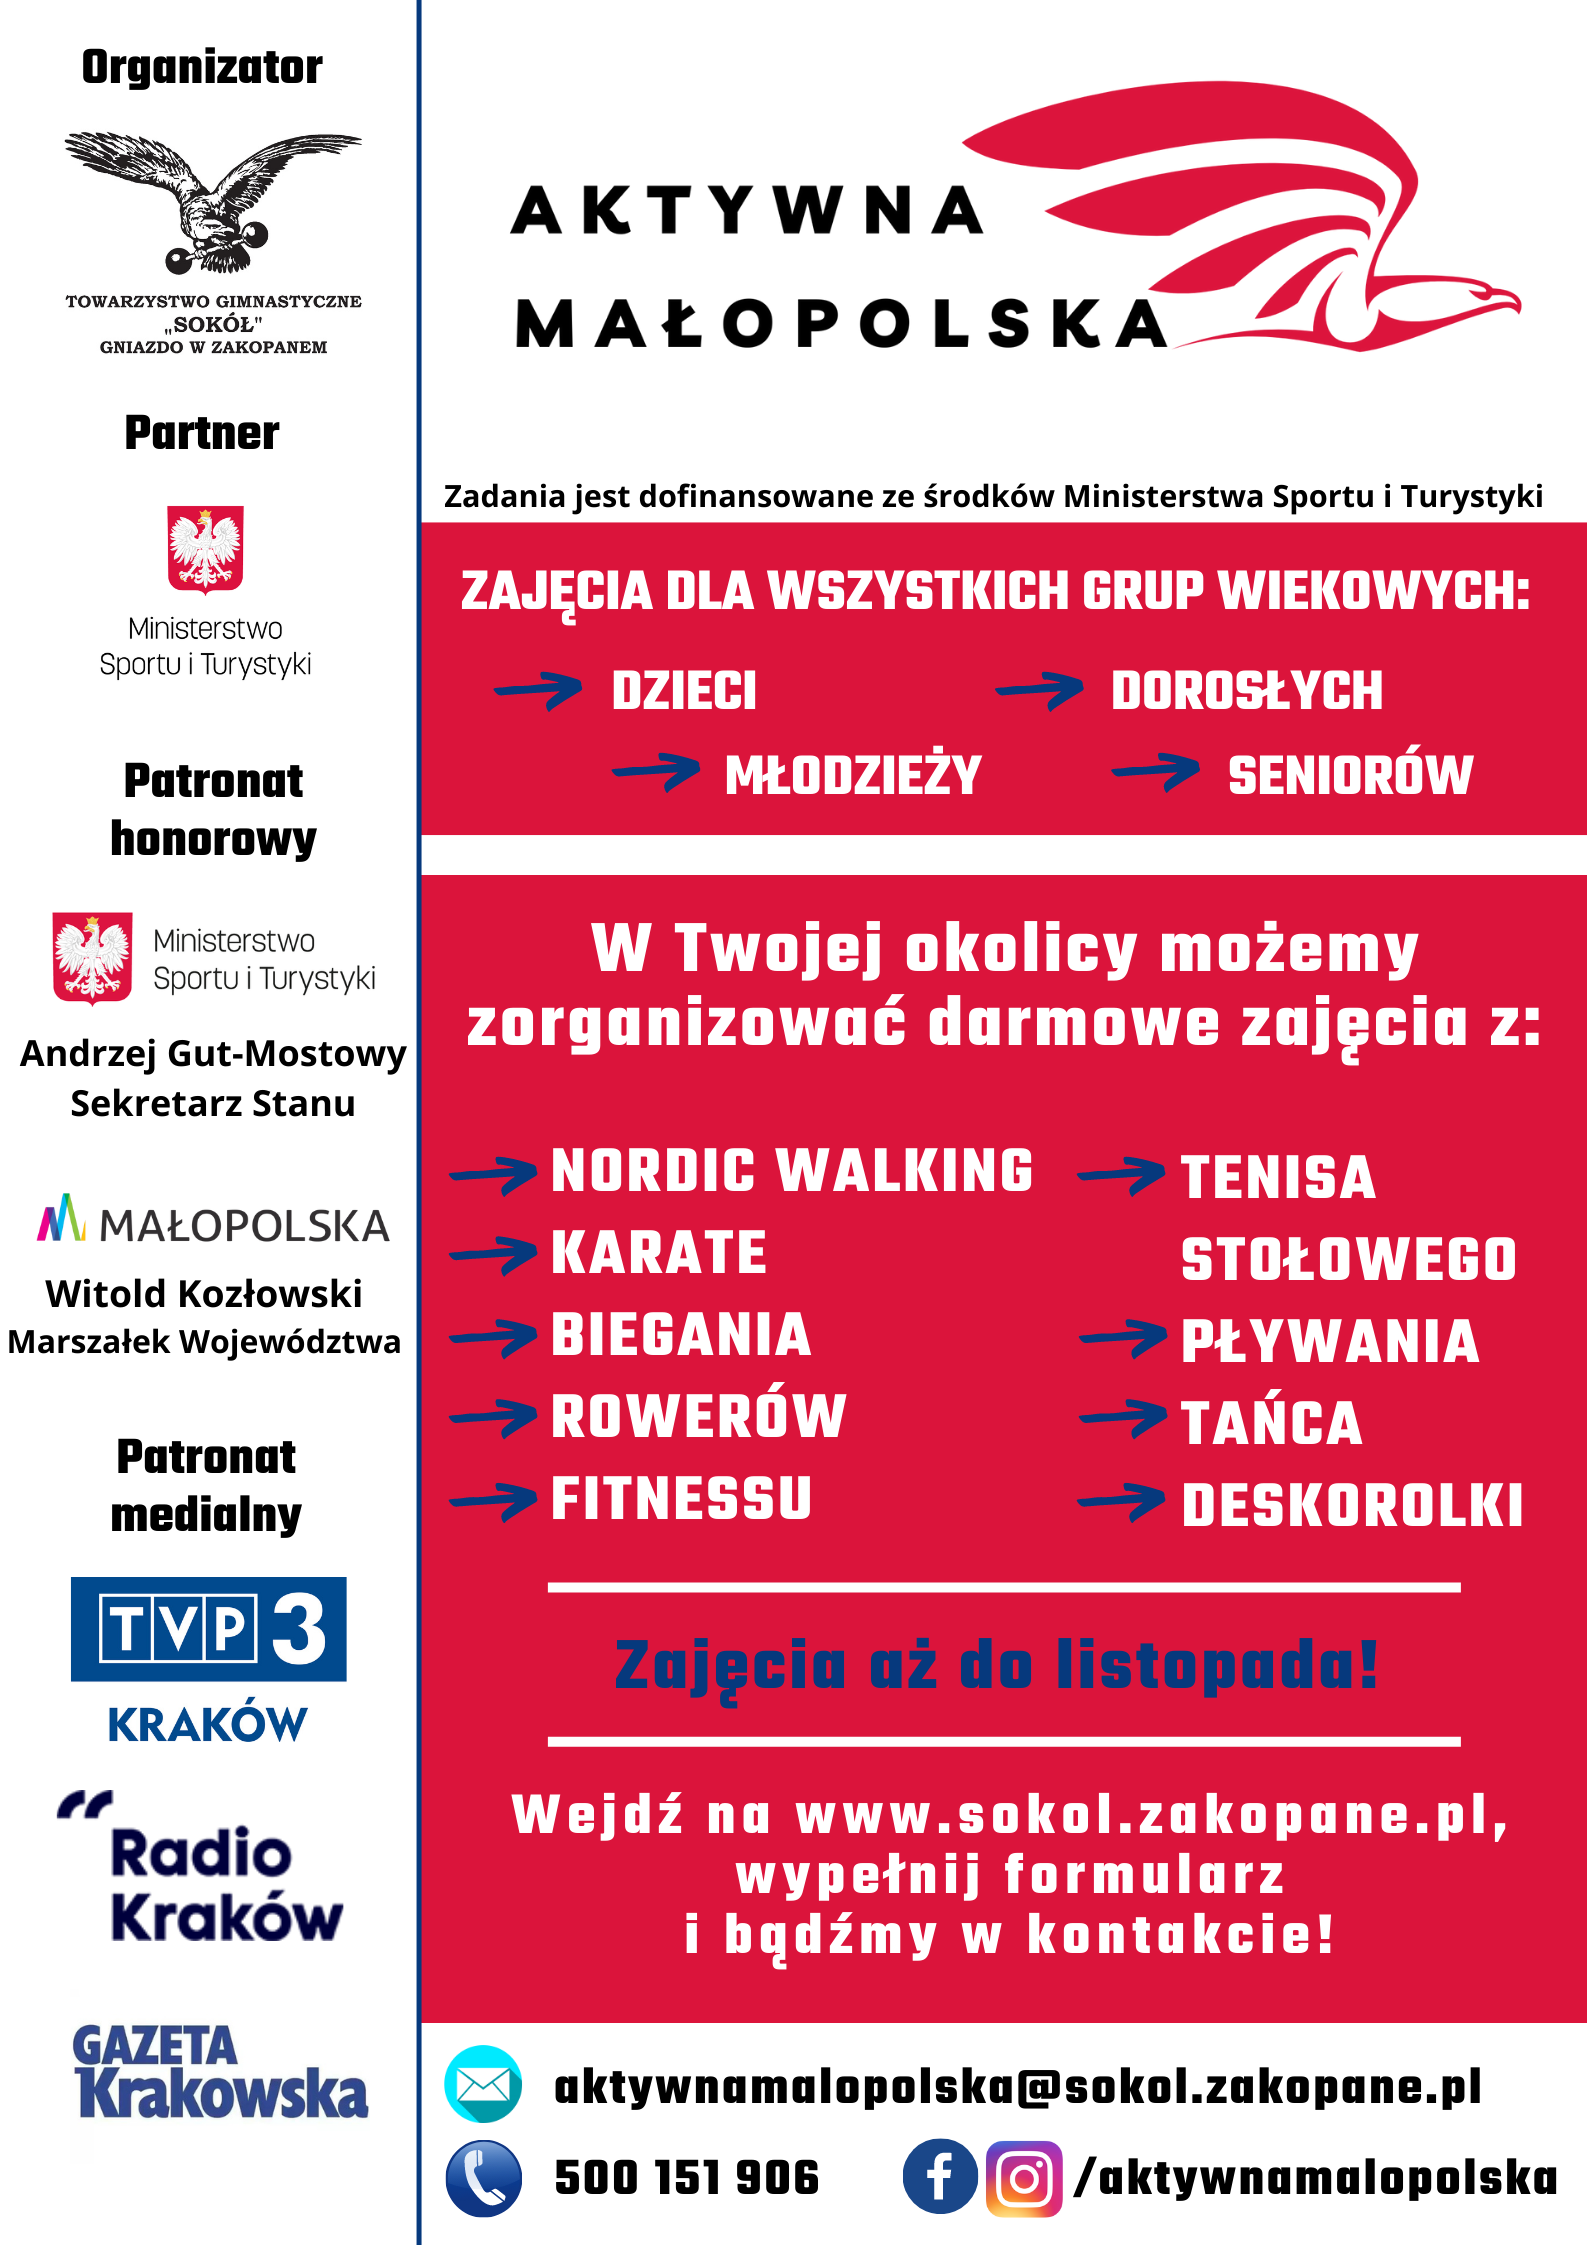 zdjęcie przedstawia plakat informacyjny dotyczący akcji Aktywna Małopolska